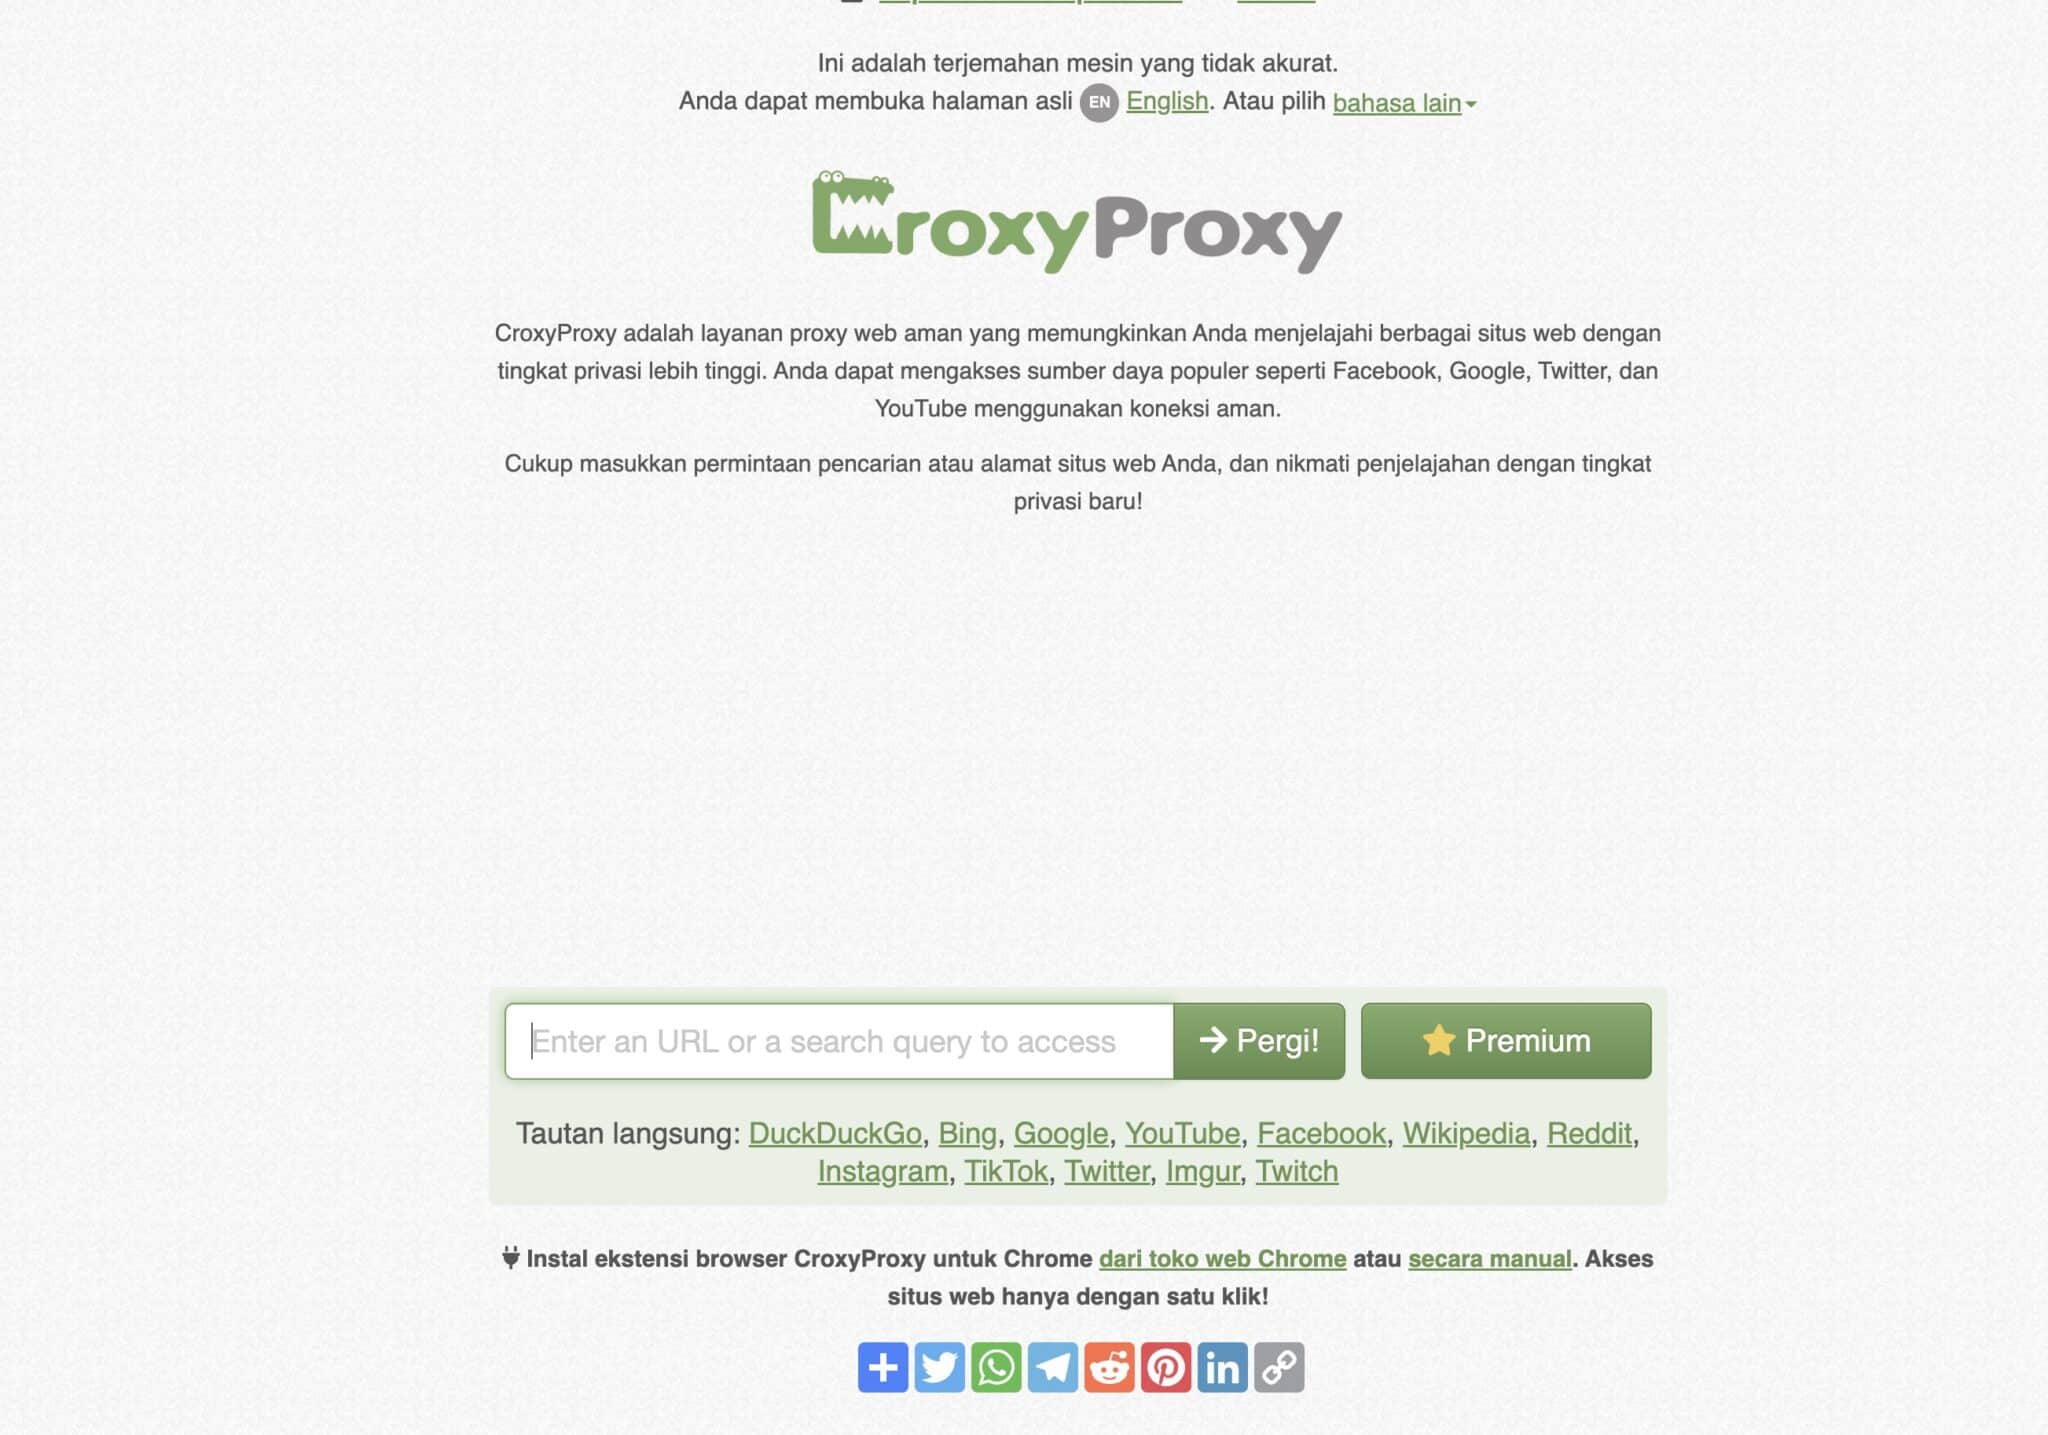 Basisfuncties van CroxyProxy: Ontgrendel de kracht van internet met CroxyProxy